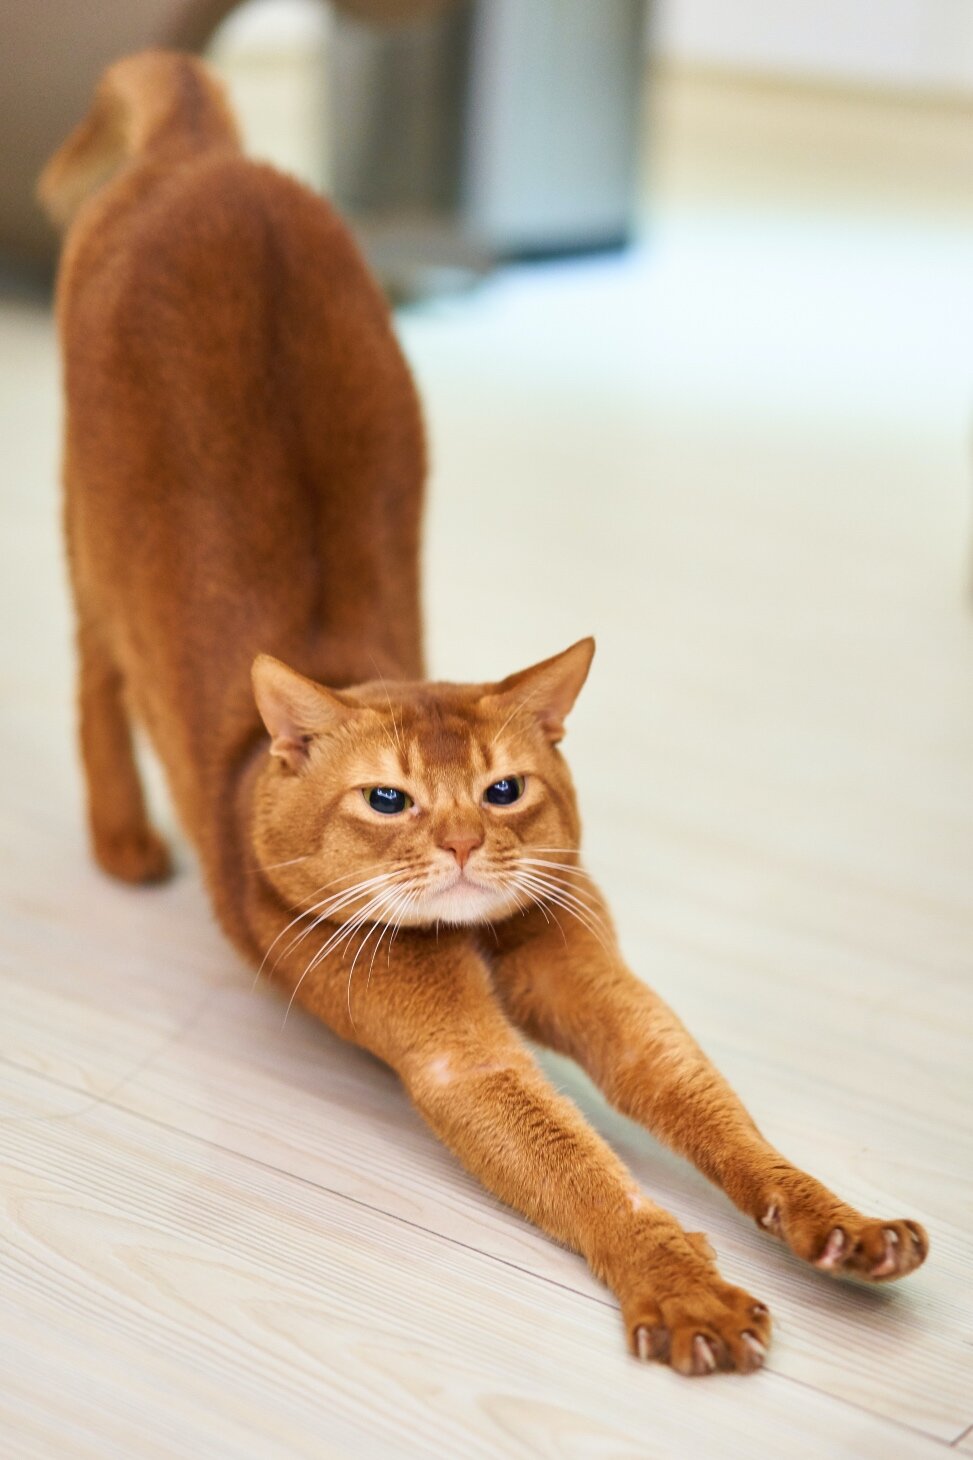 Räkelnde Katze als Beispiel für Faszientraining im Alltag Praxis für Osteopathie Angela Schubert.jpg